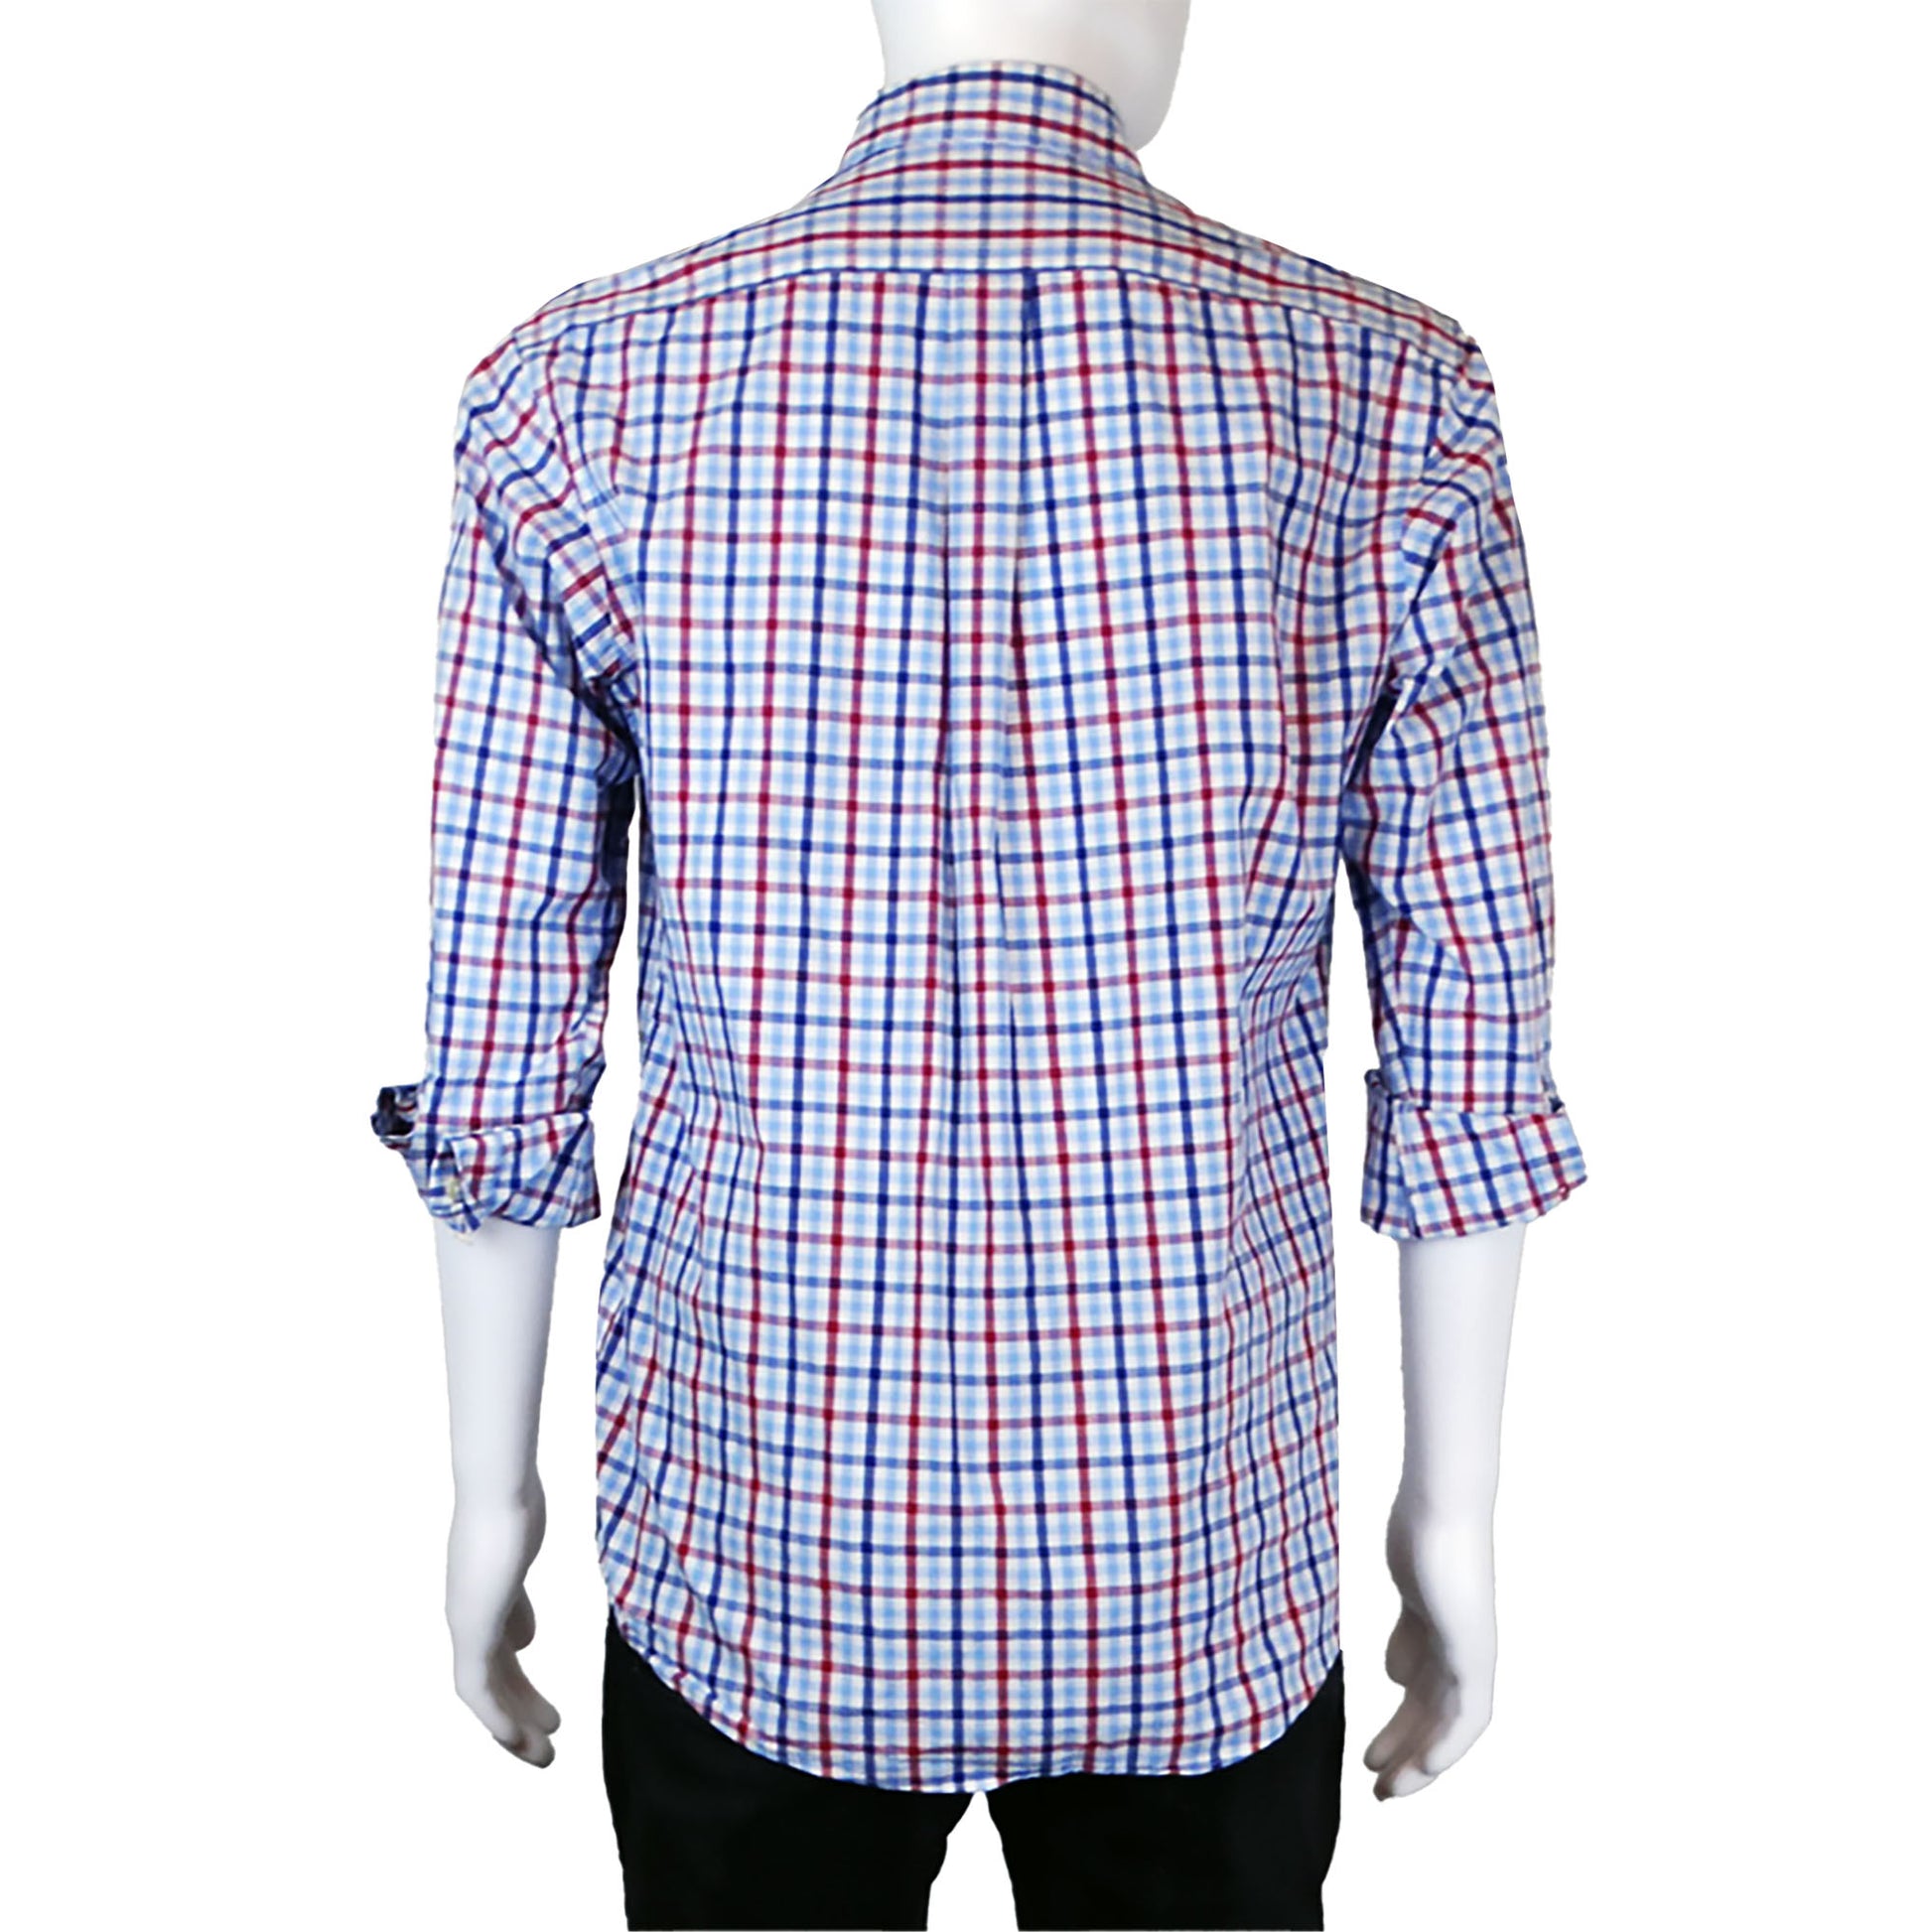 Club-Room-Blue-White-Red-Check-Long-Sleeve-Sport-Shirt.-Shop-eBargainsAndDeals.com